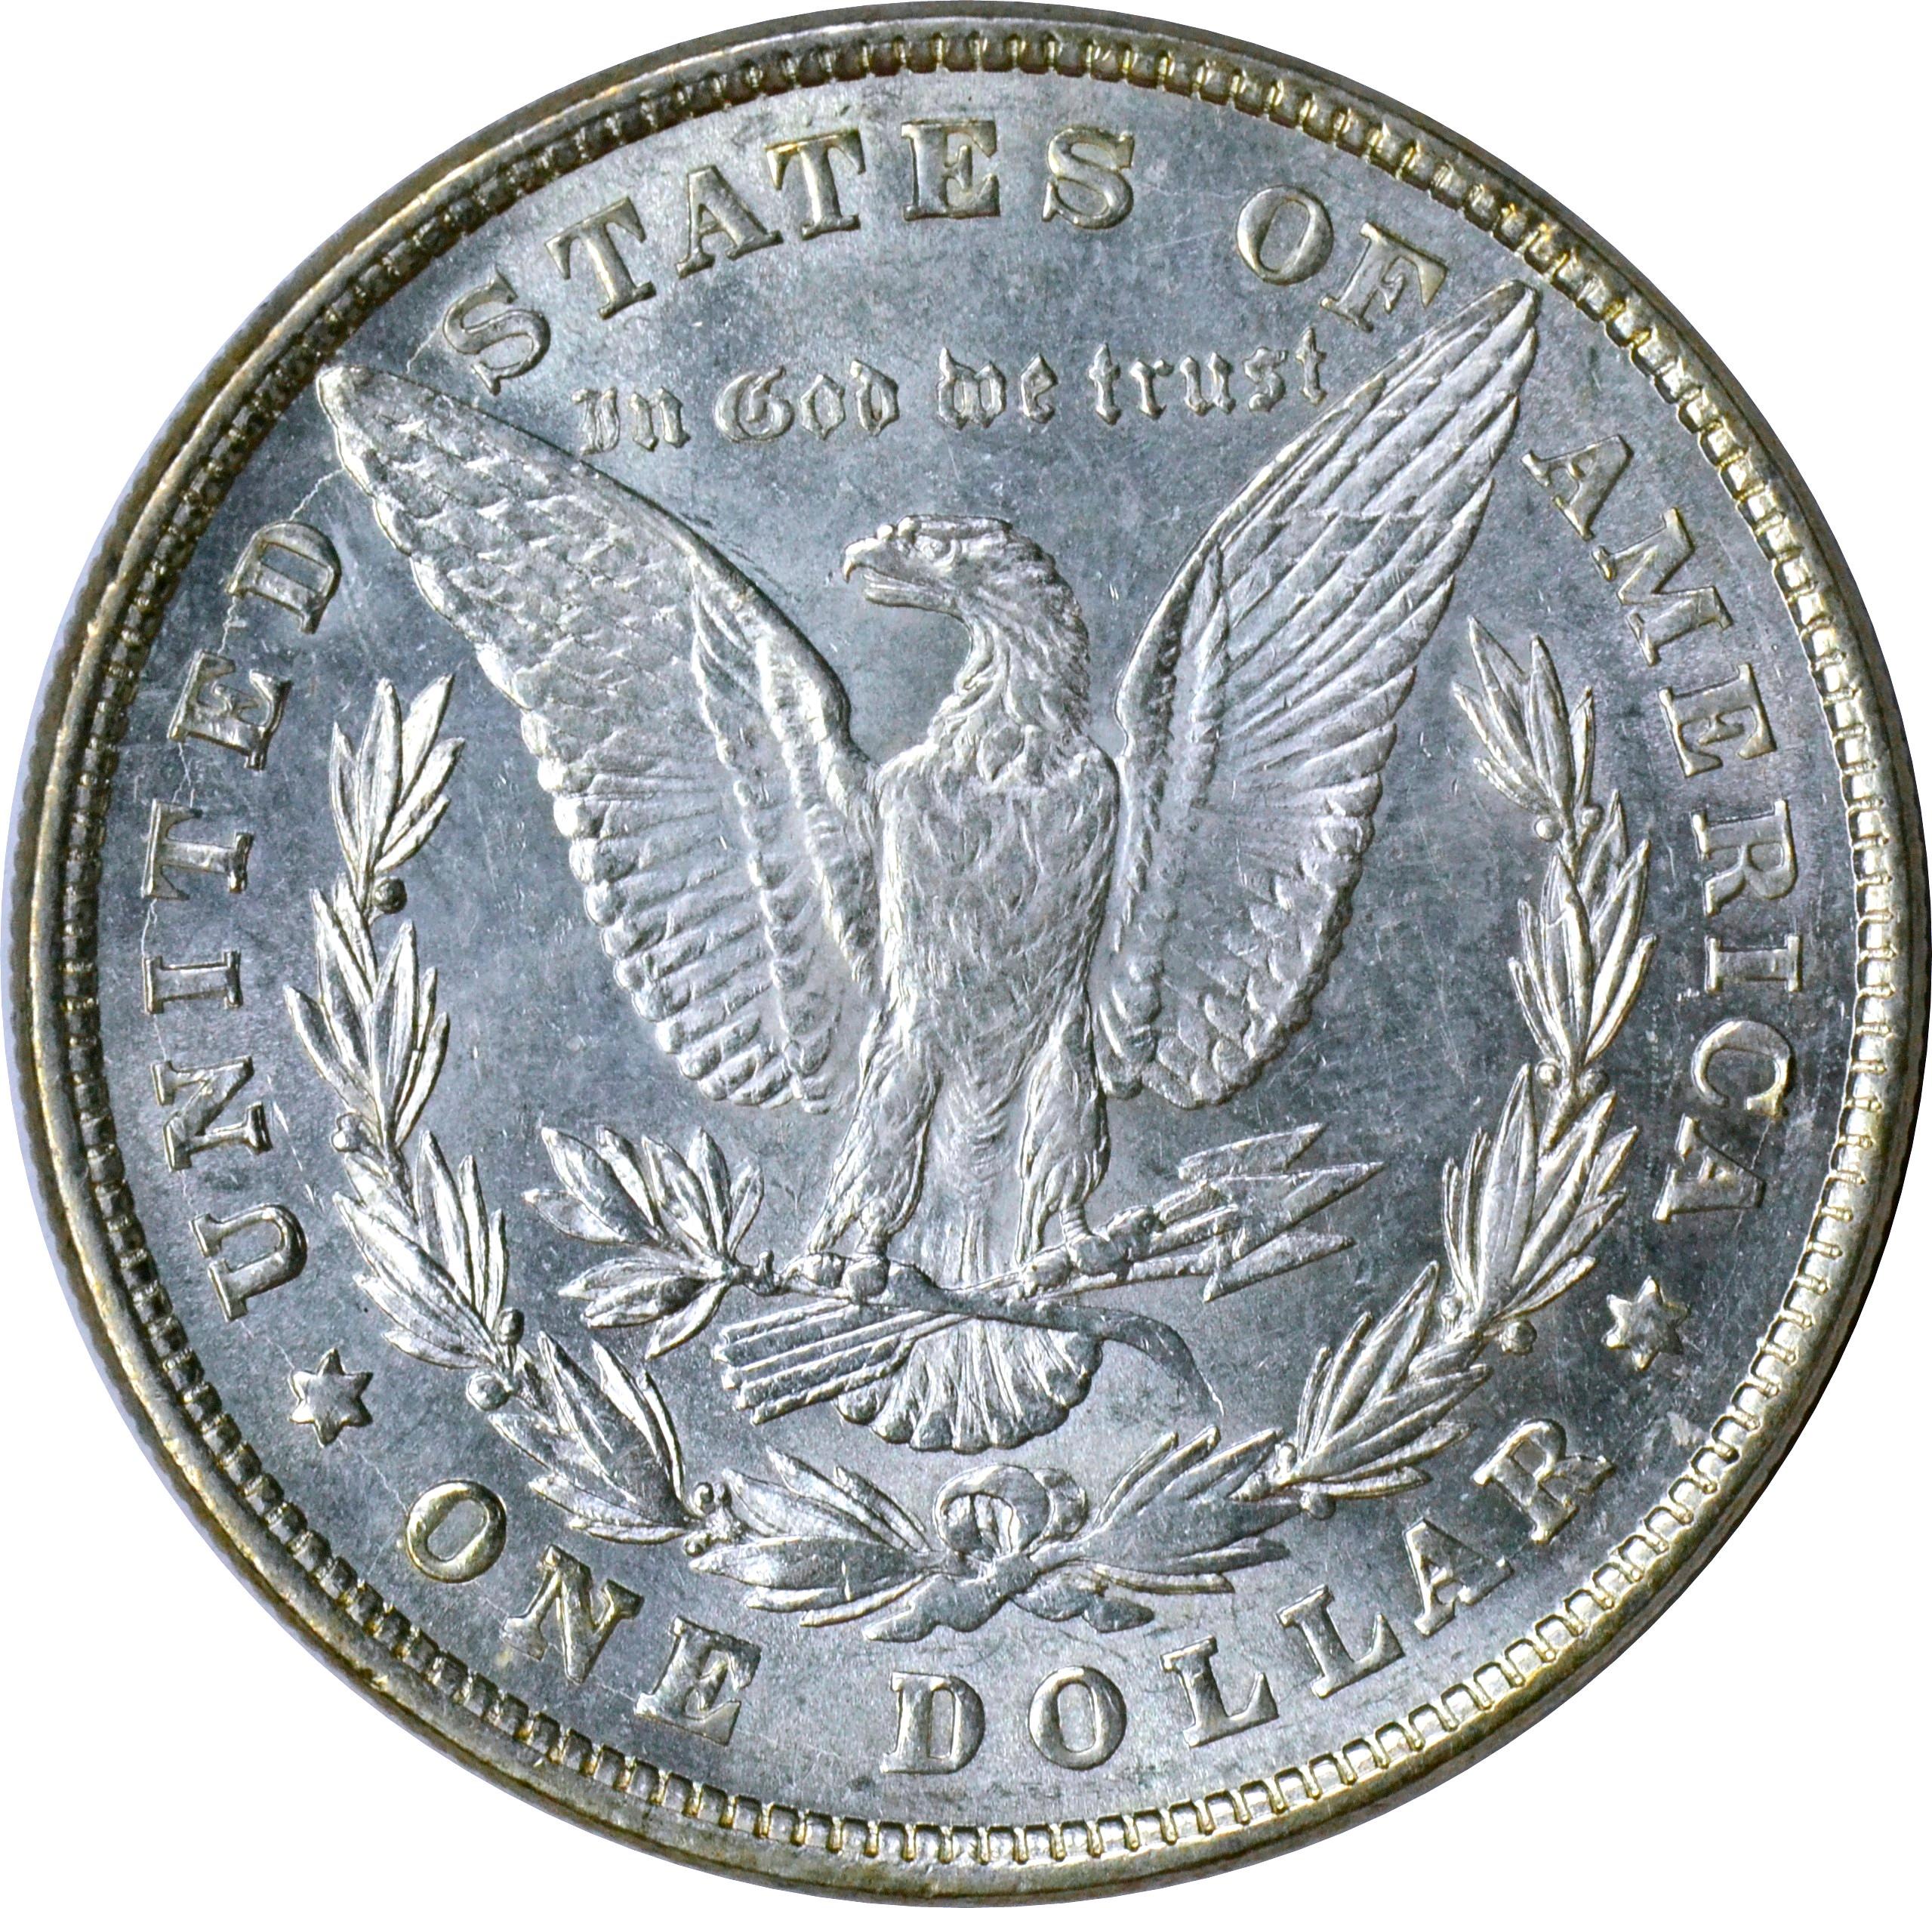 1878 8TF MORGAN DOLLAR